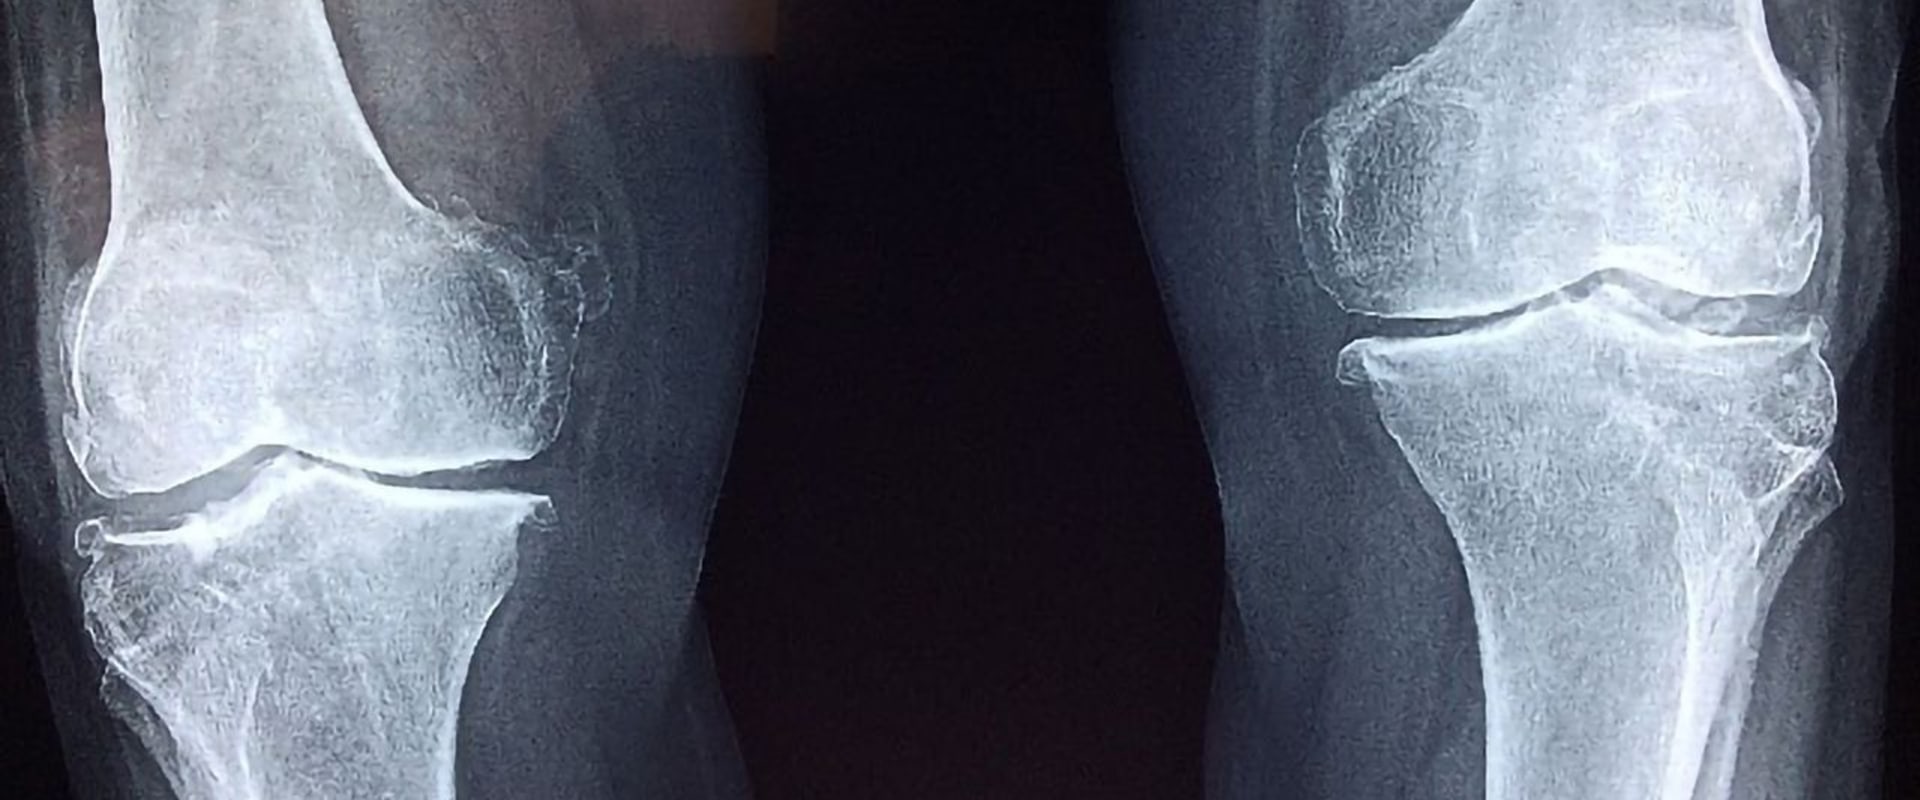 Can stem cells regrow knee cartilage?